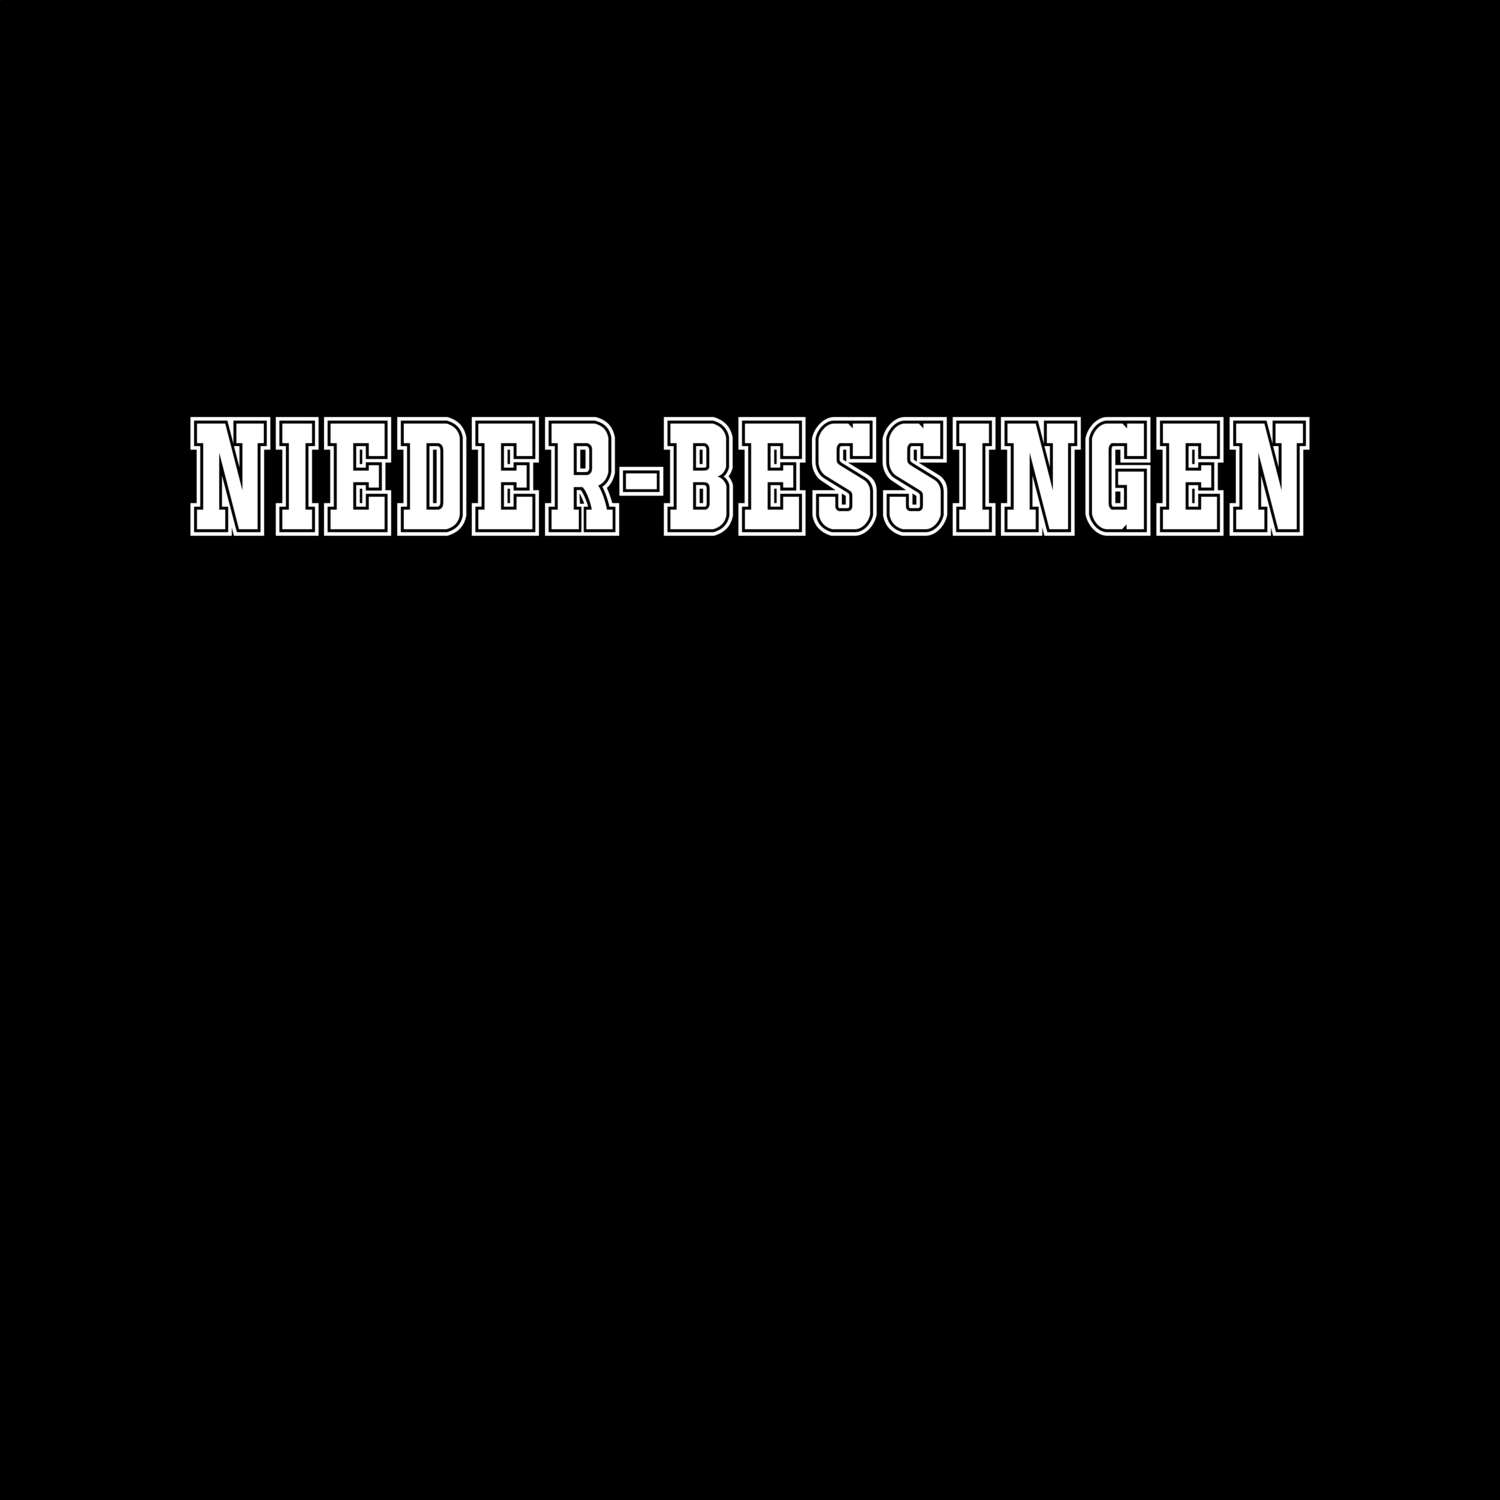 Nieder-Bessingen T-Shirt »Classic«